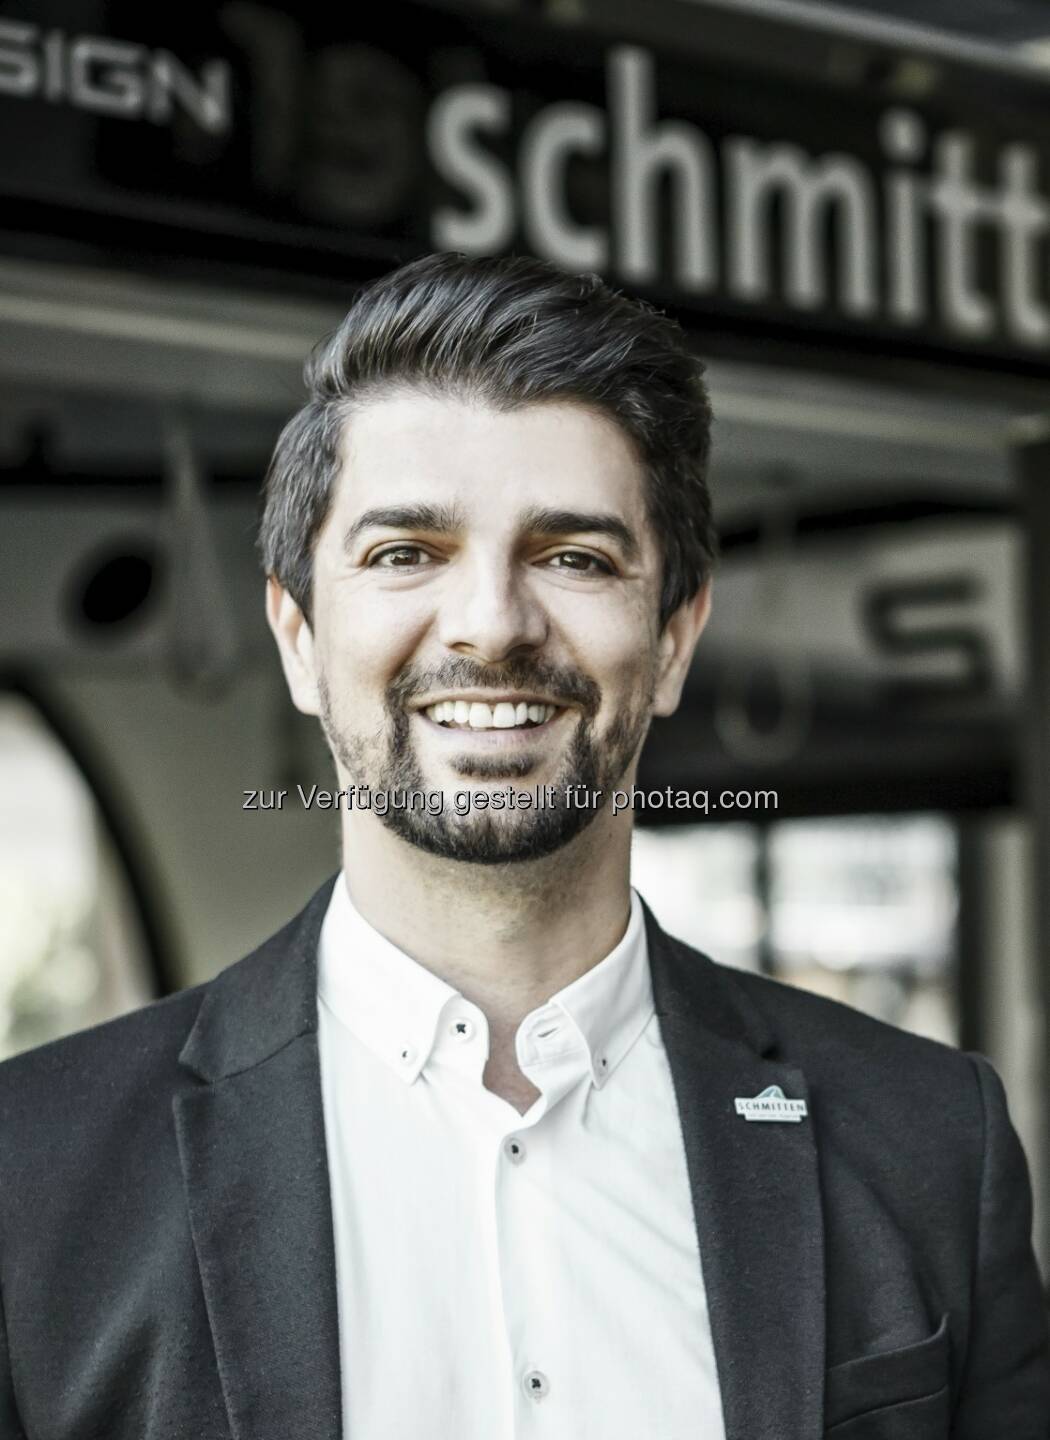 Markus Papai hat die Marketingleitung der Schmittenhöhebahn in Zell am See übernommen (C) Schmittenhöhenbahn